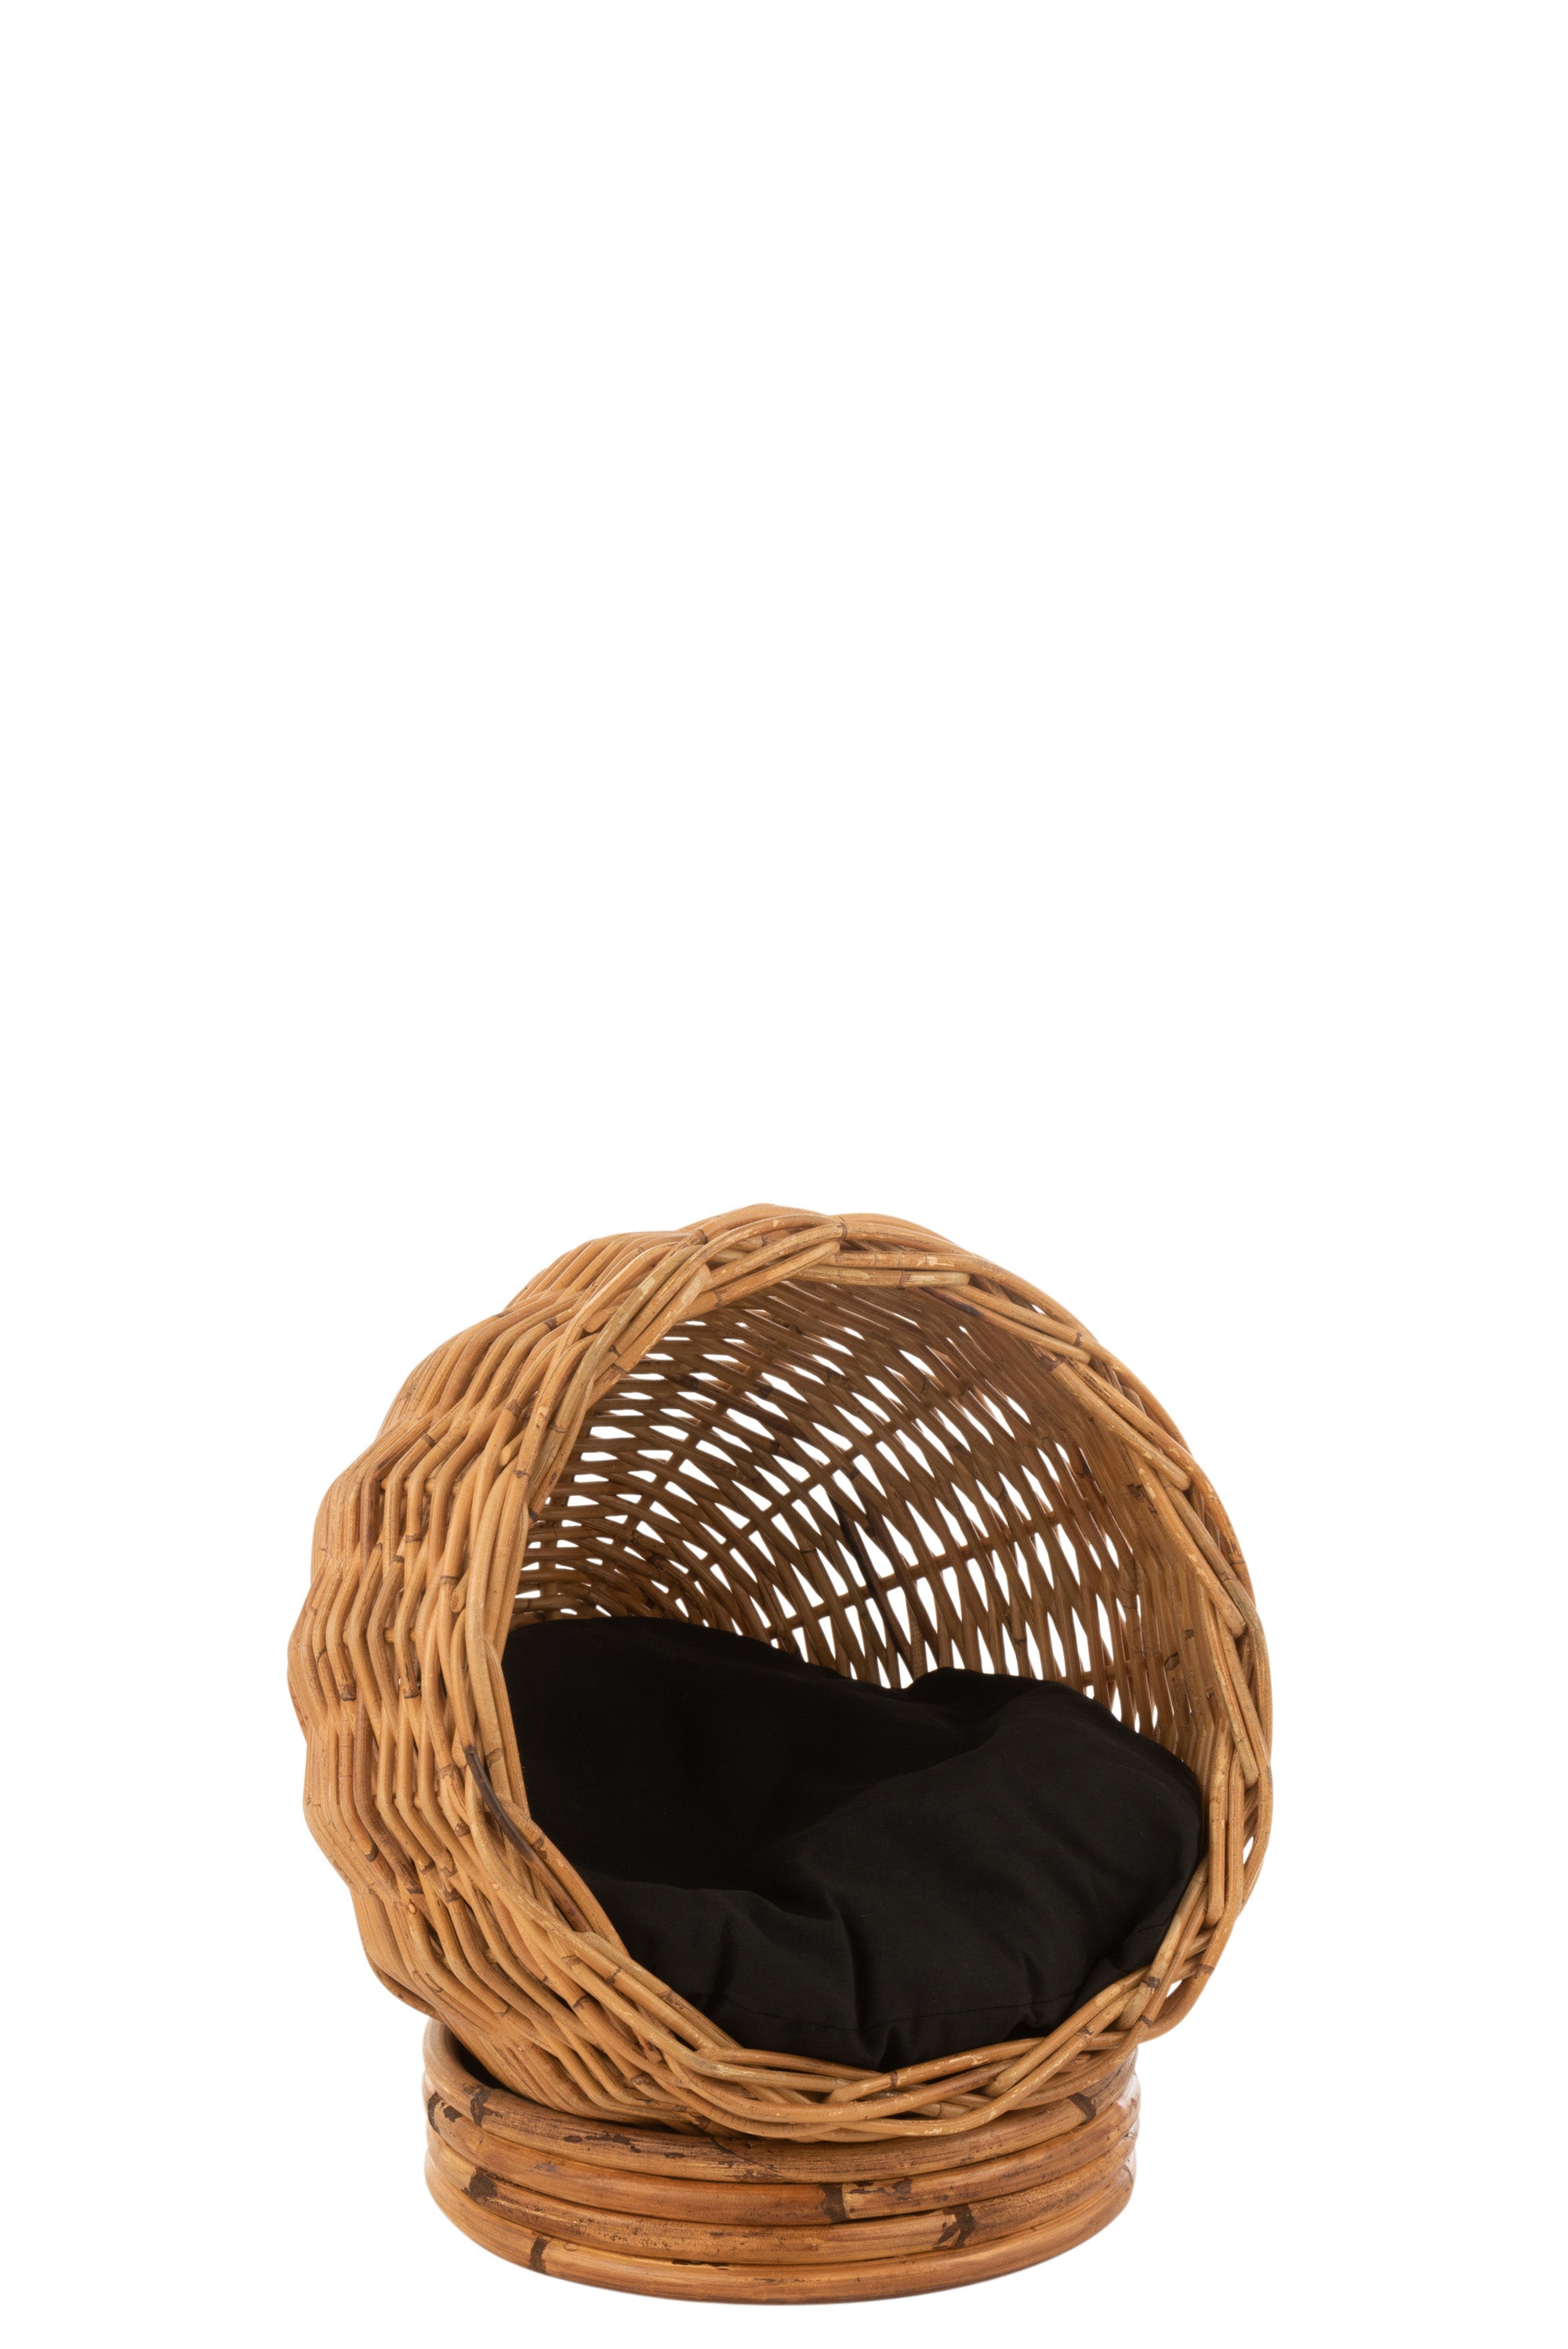 Katzenkorb aus Rattangeflecht; eine halboffene Kugel mit schwarzem Kissen innen, liegt auf einem runden Sockel aus Rattansträngen.